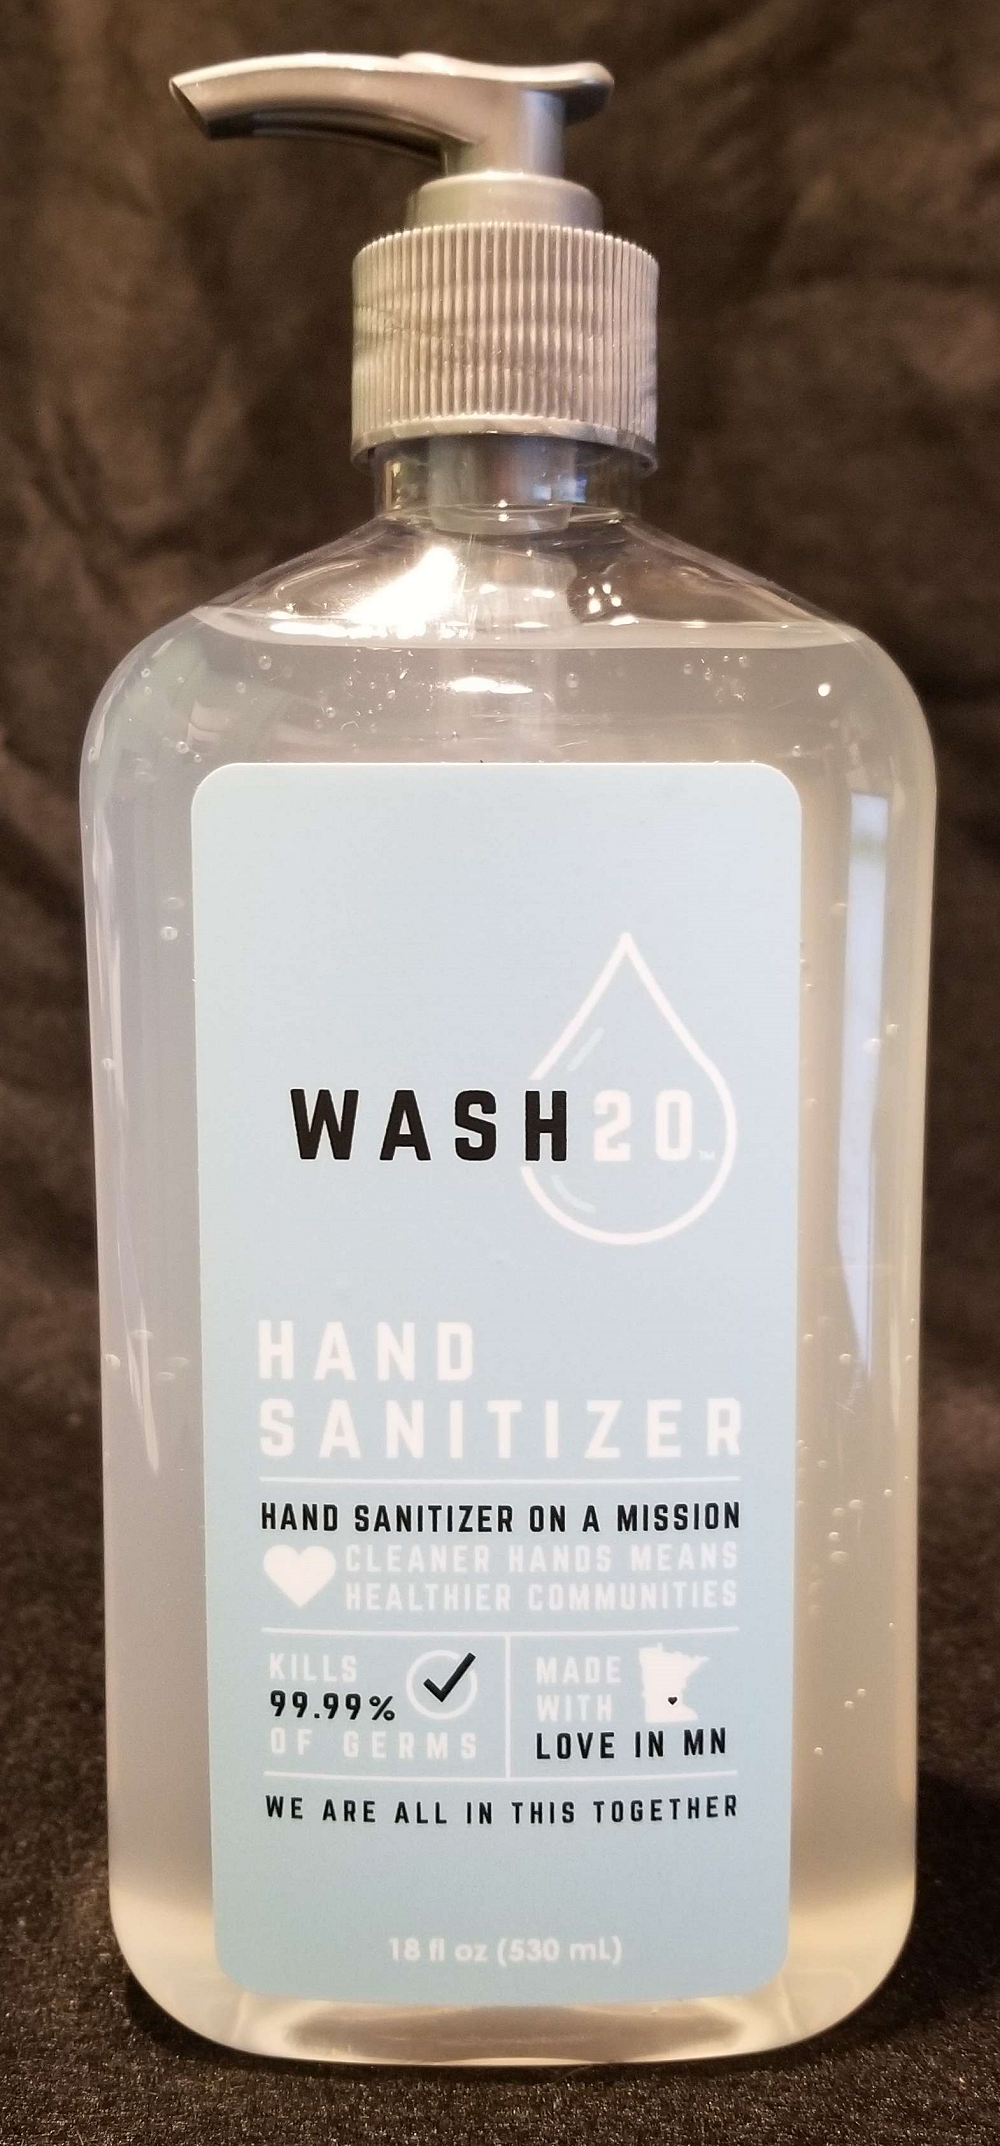 Wash 20 Hand Sanitizer